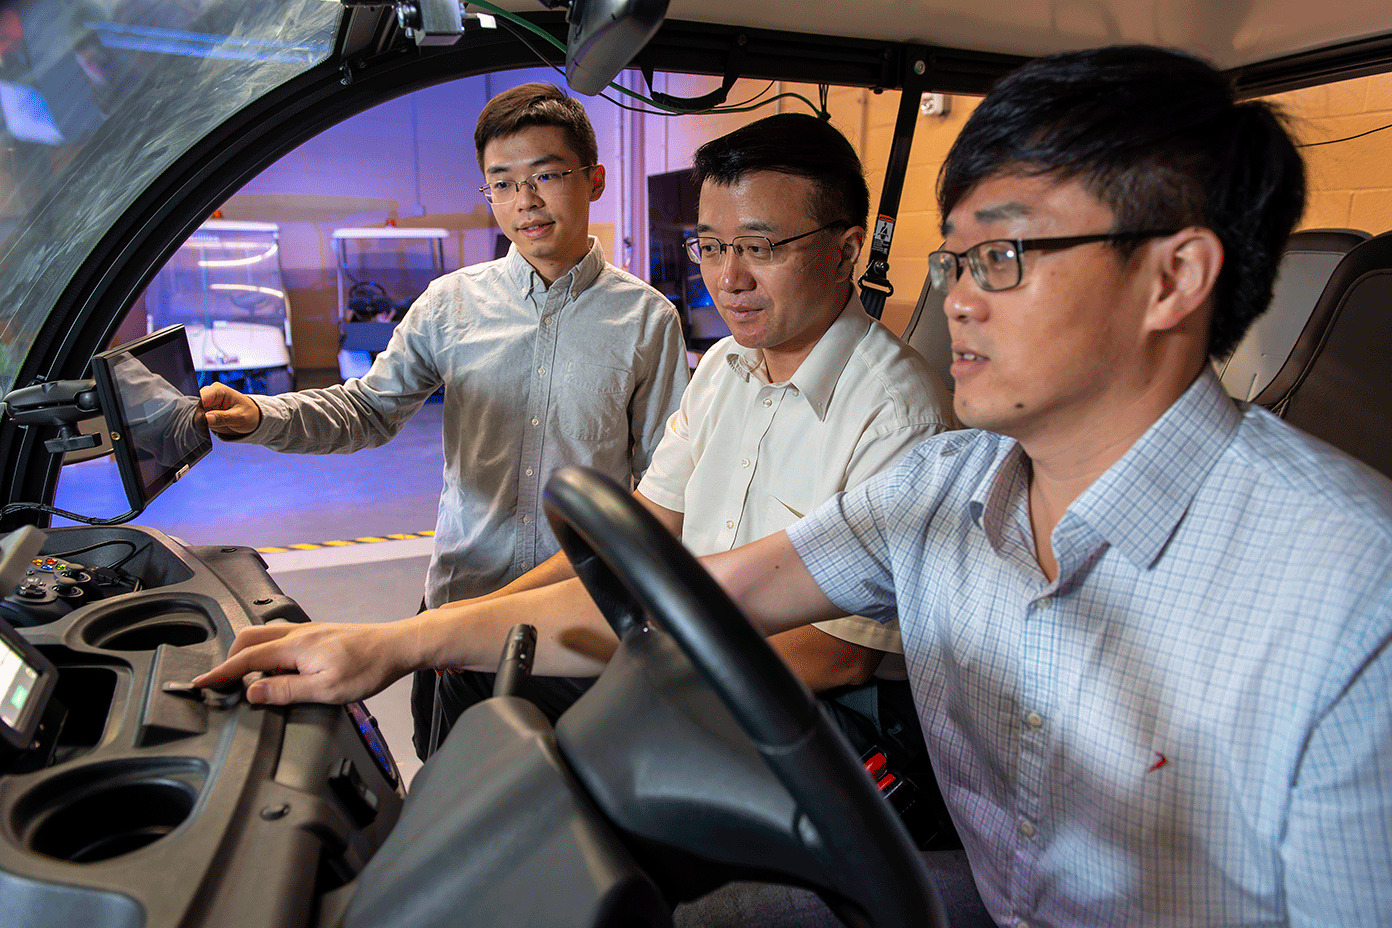 Photo of UNT researchers inside the autonomous car they built